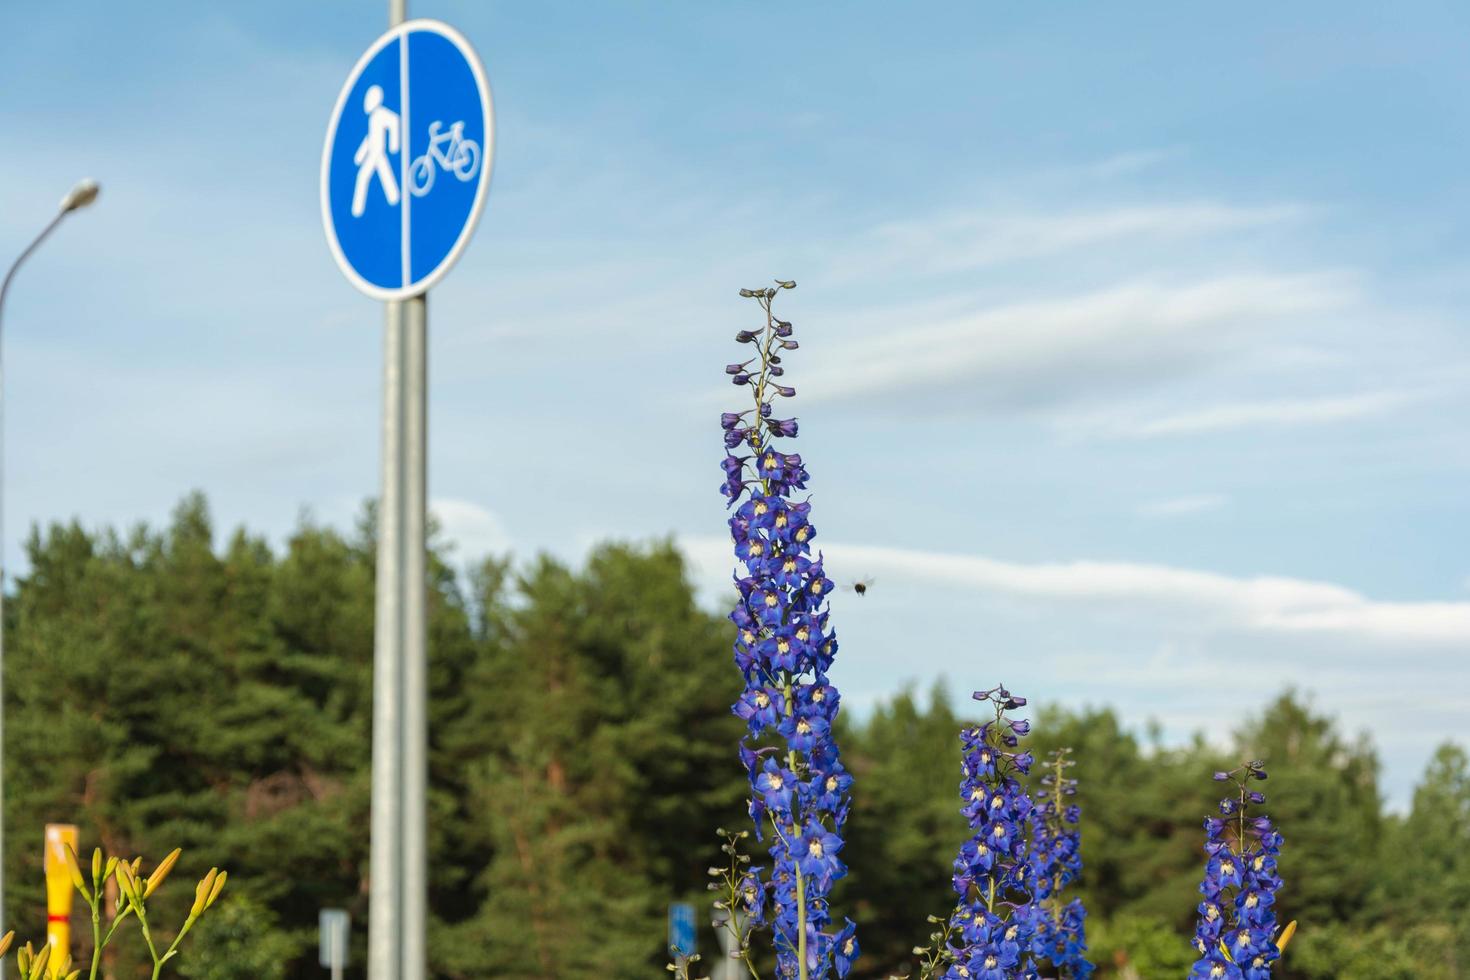 blå riddarsporre blommor på de bakgrund av en cykel väg och en motorväg med godkänd cyklister och bilar, ett urban landskap foto